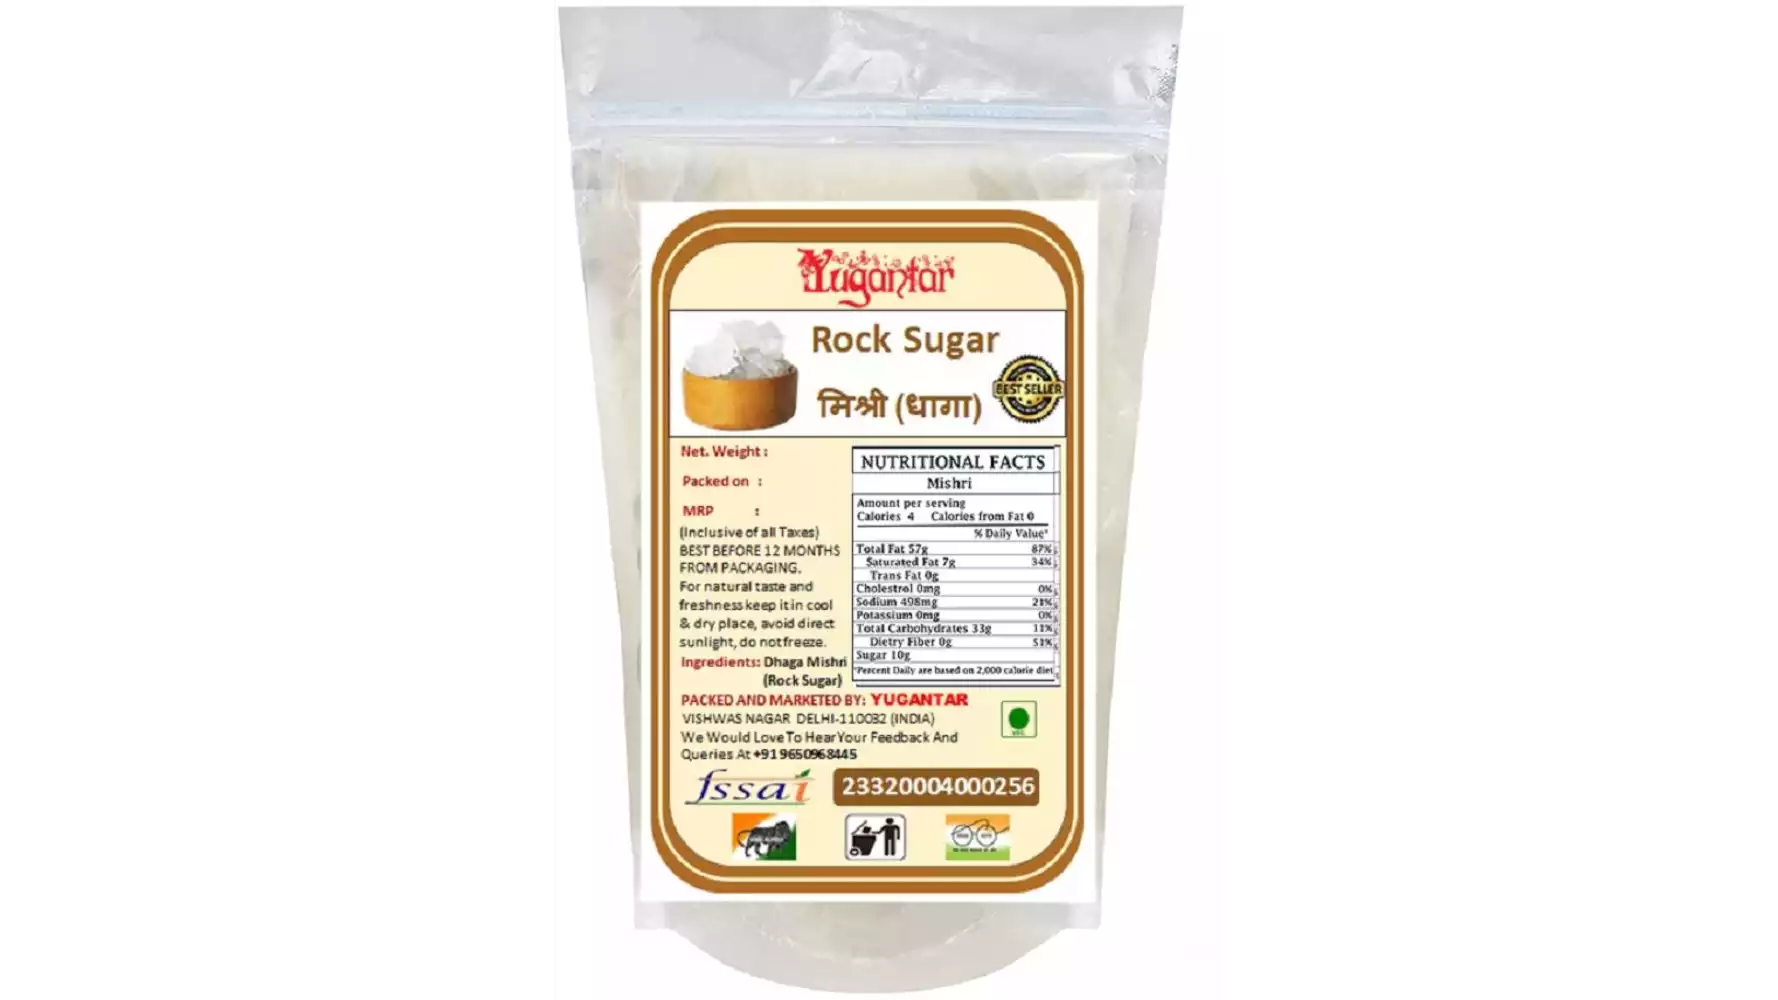 Yugantar Rock Sugar (Dhaga Mishri) (400g)